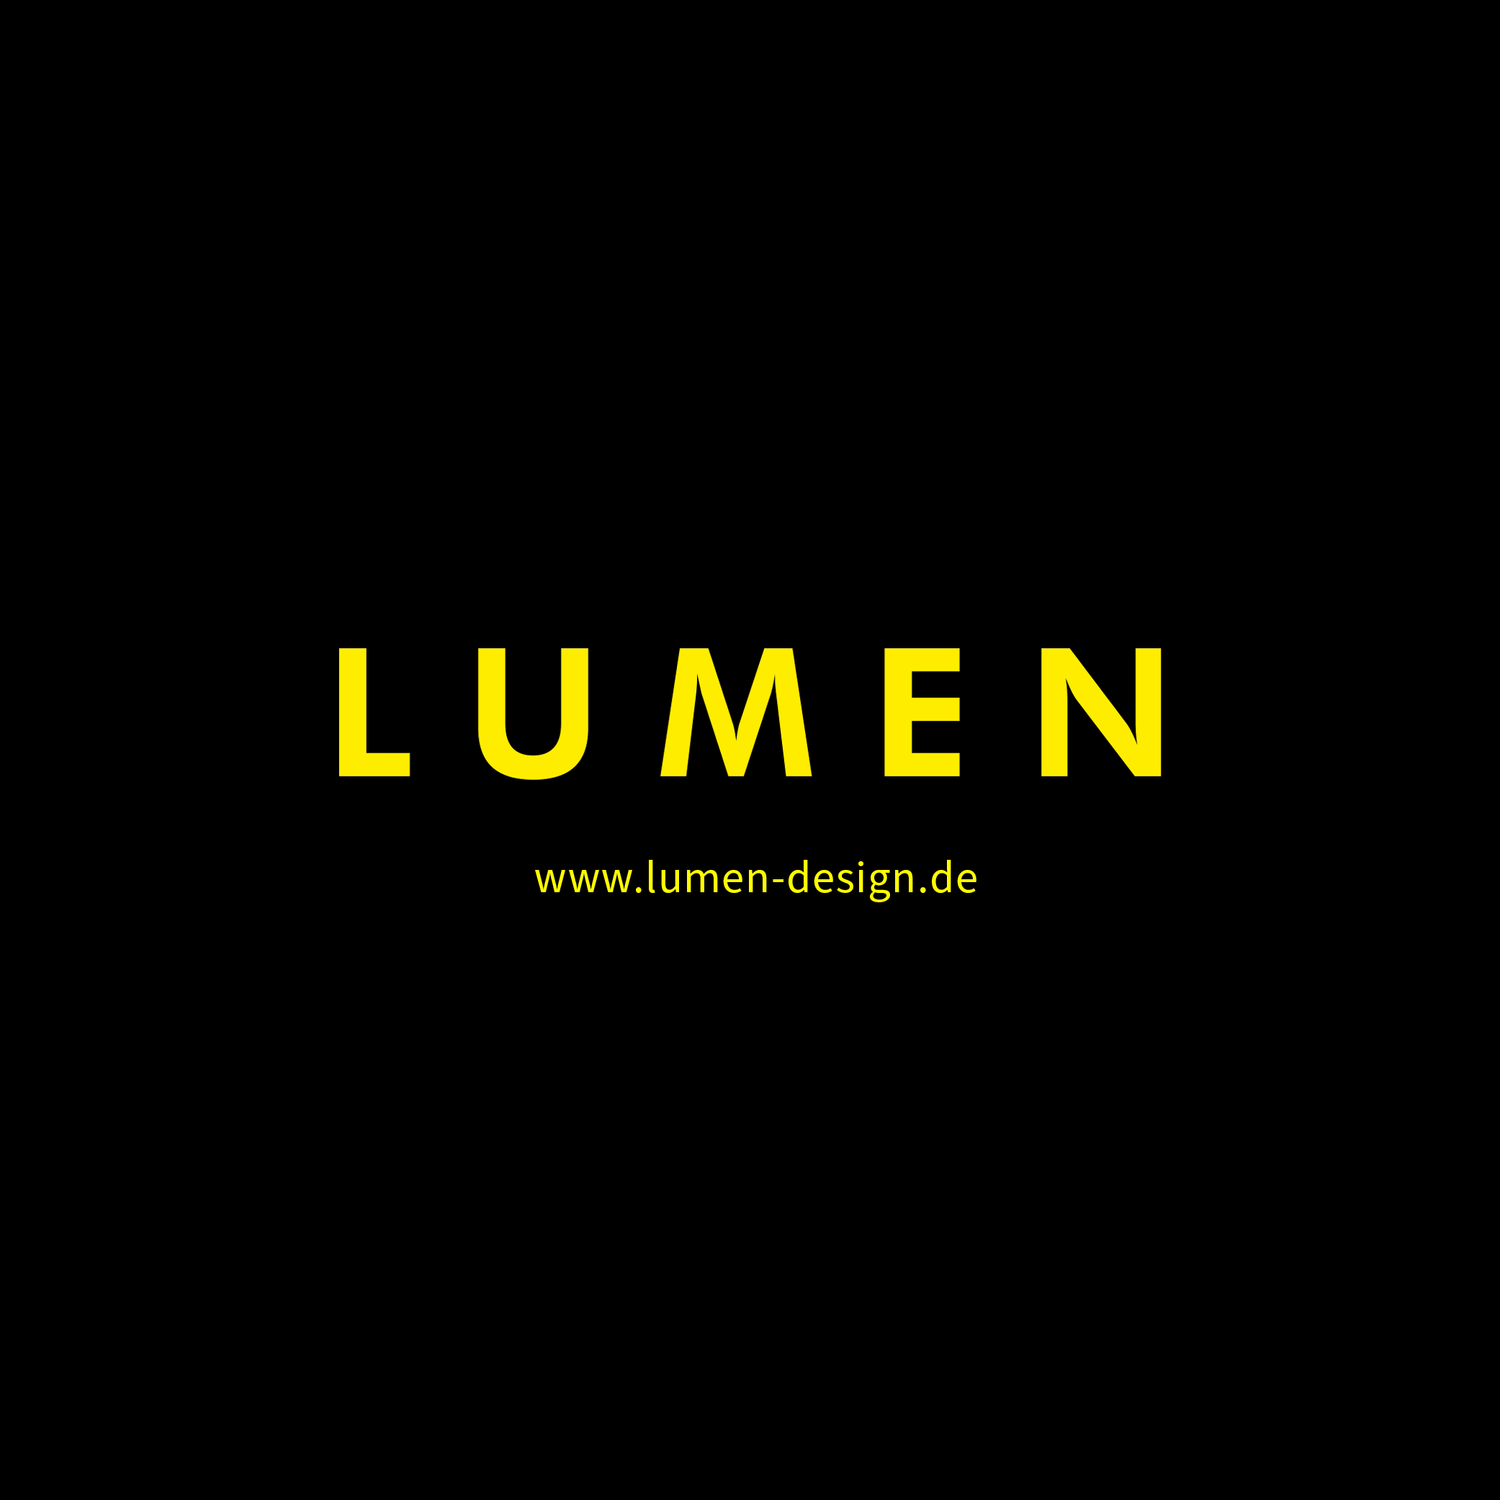 (c) Lumen-design.de